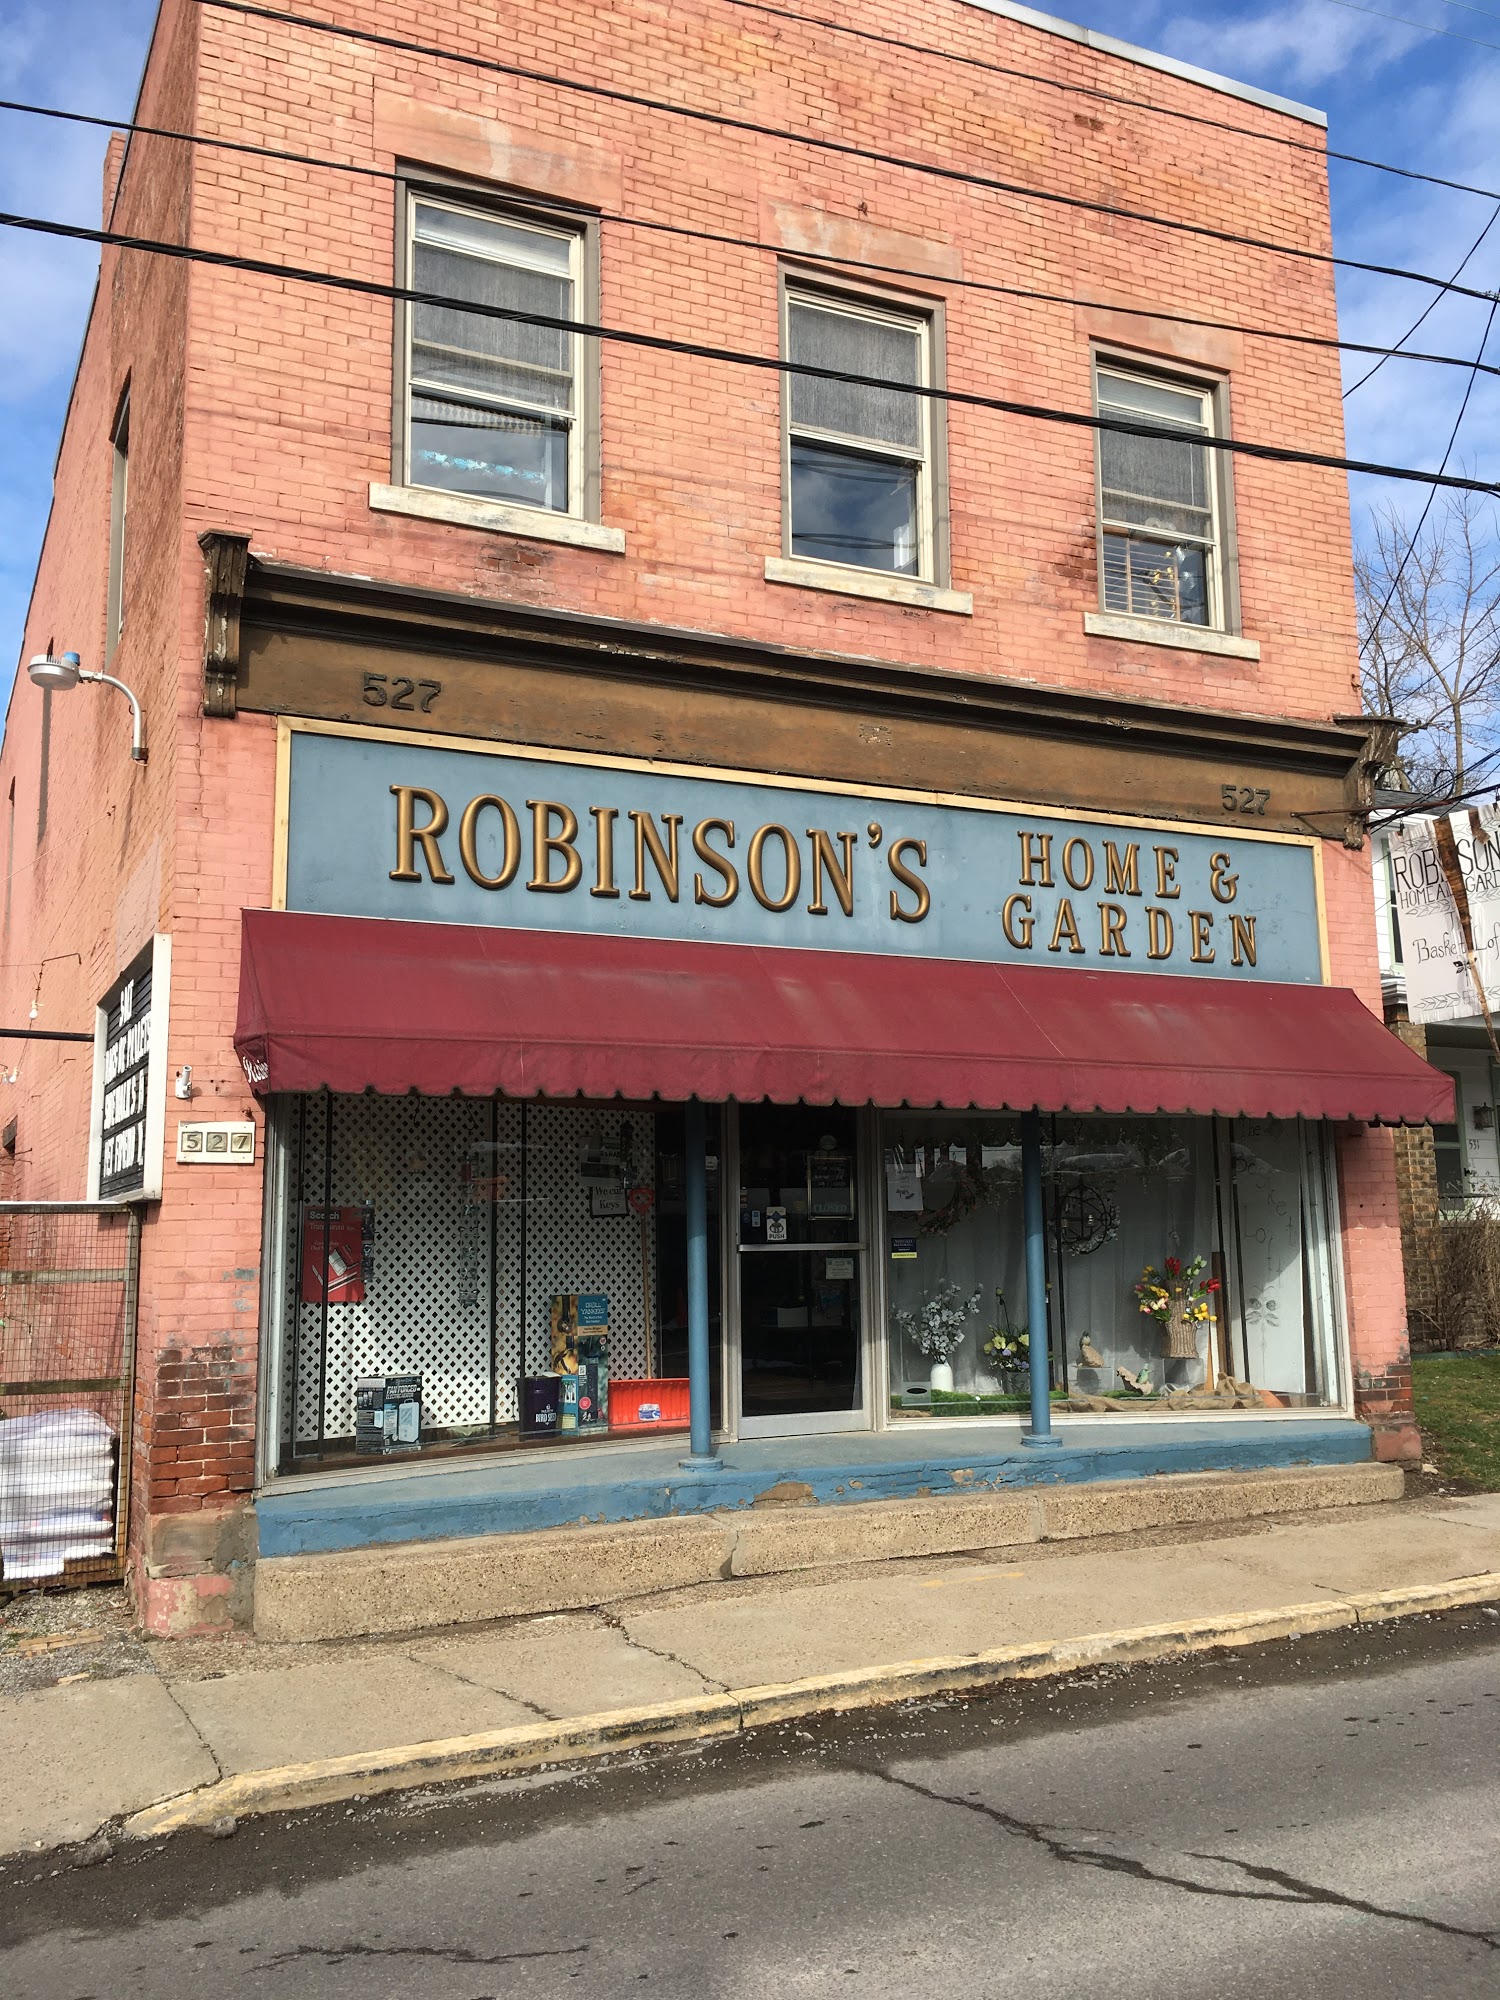 Robinson's Home & Garden